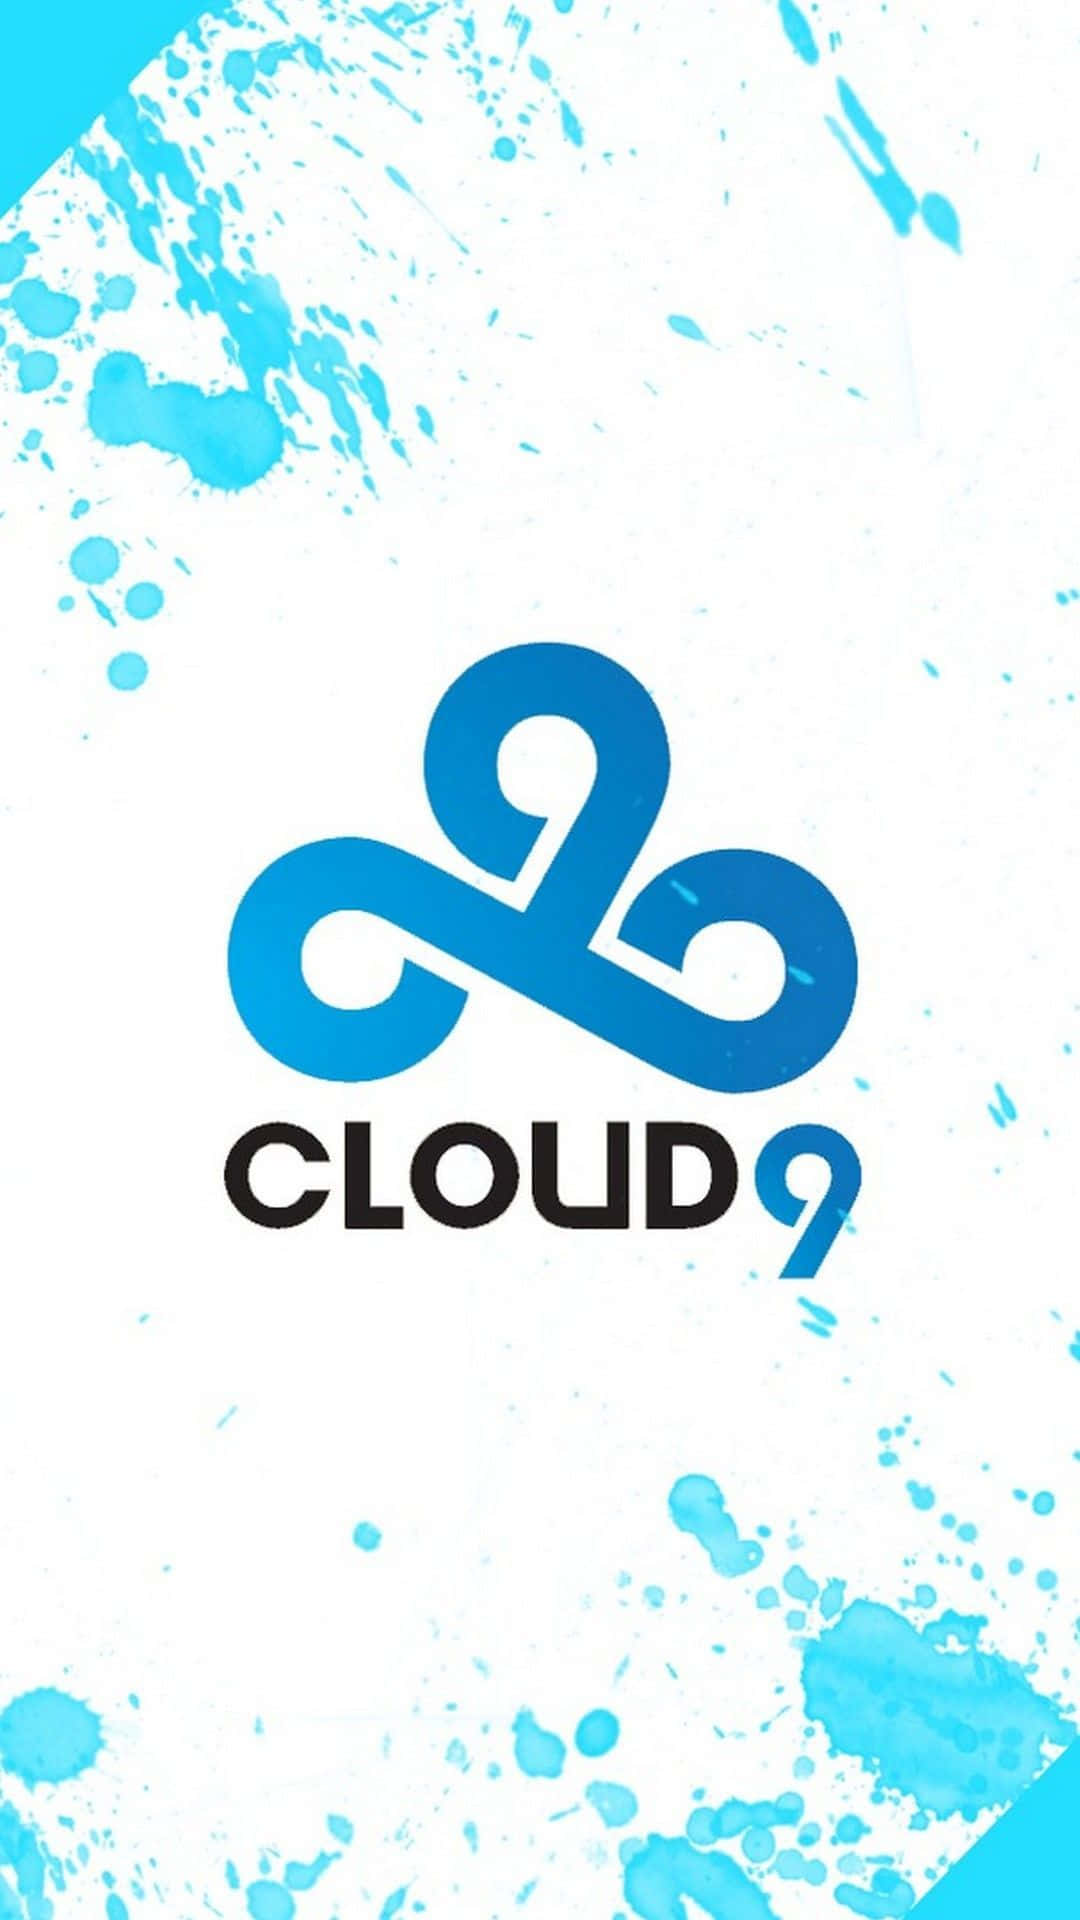 "Reaching Cloud 9" Wallpaper